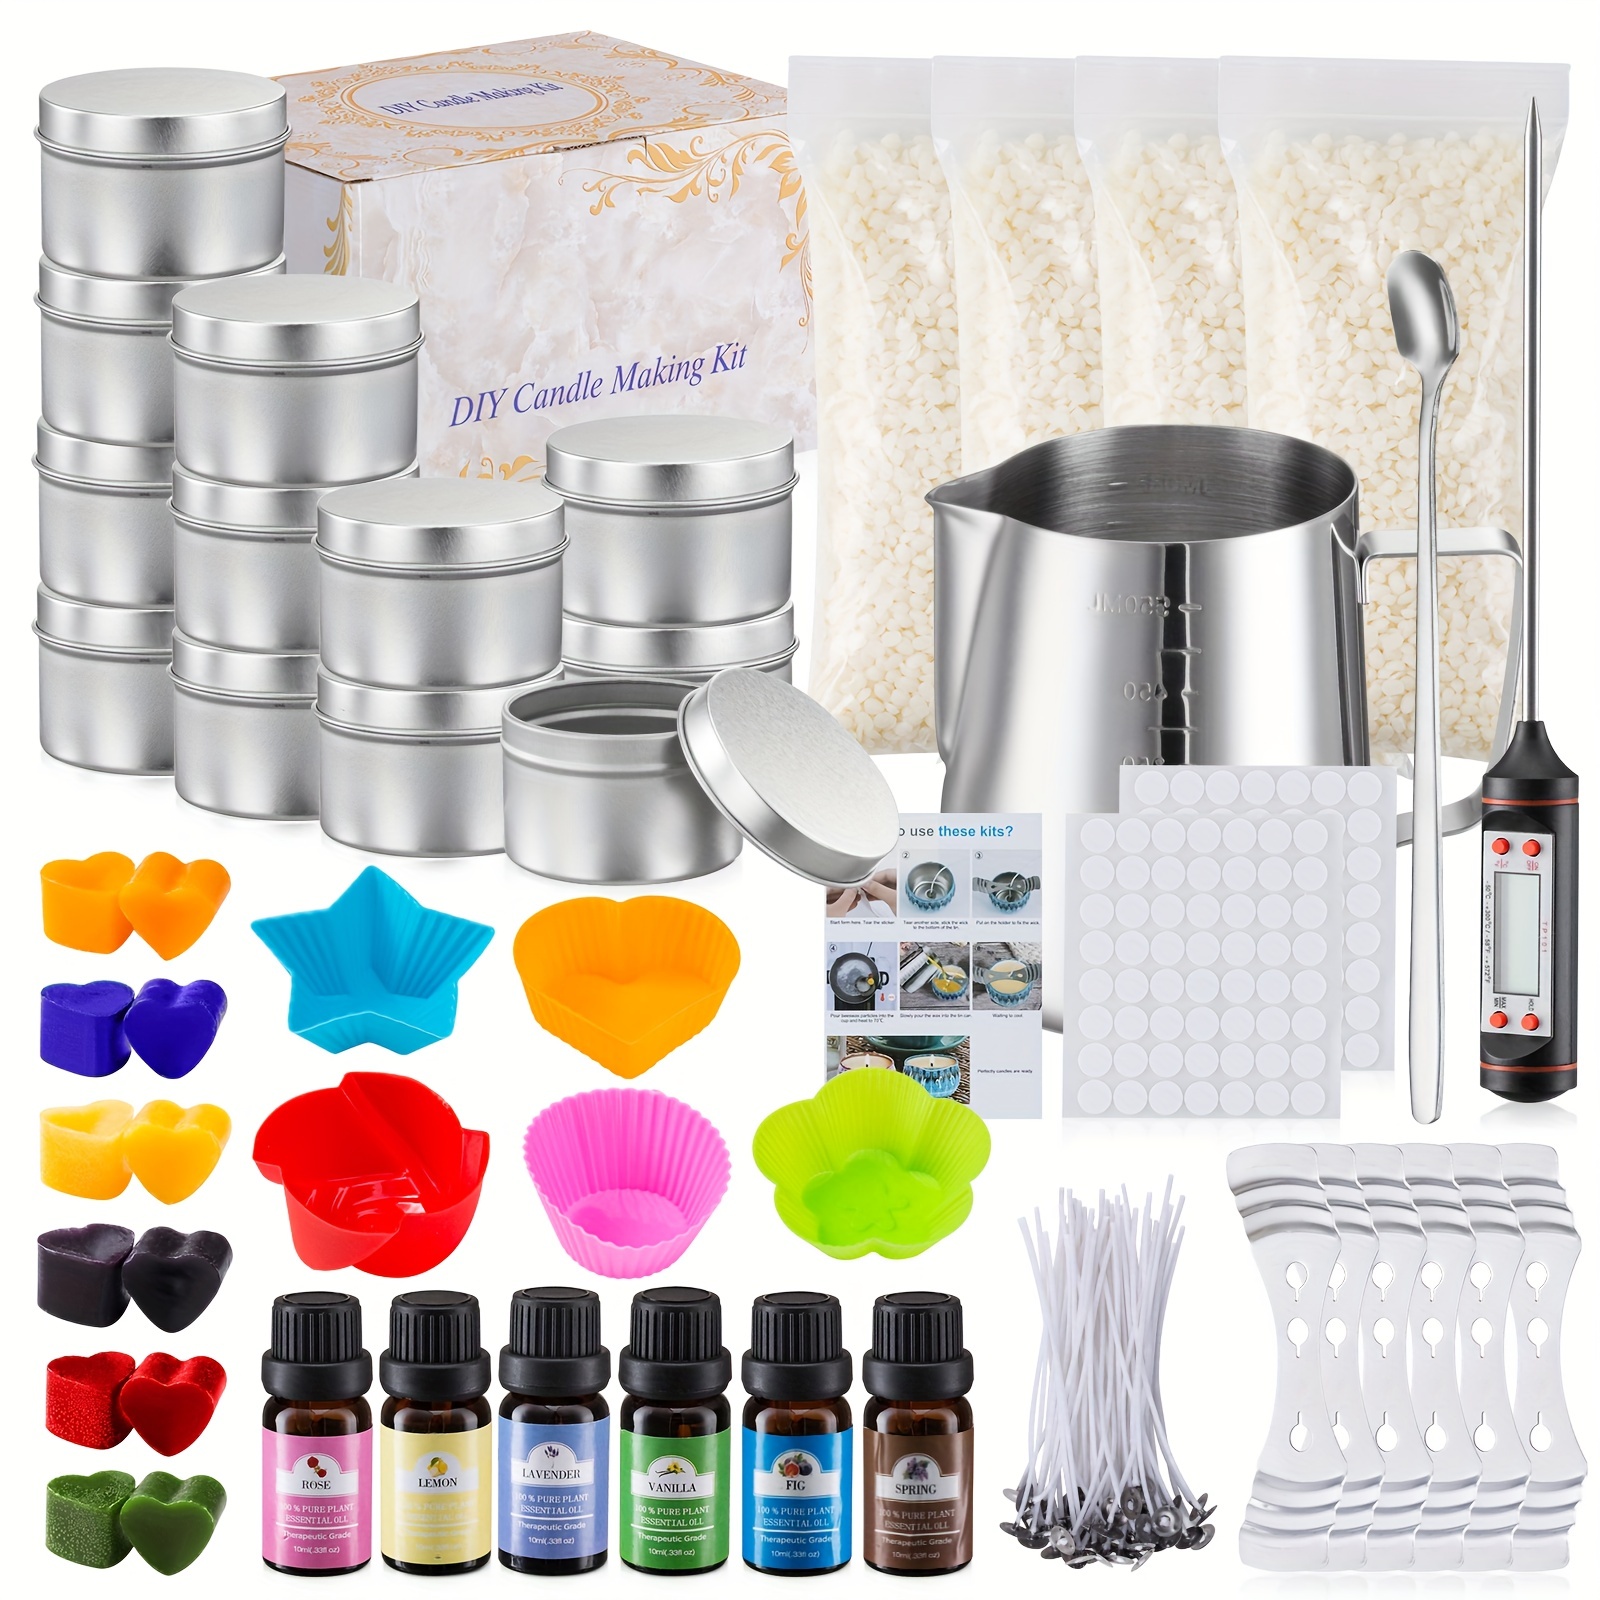  Kit de fabricación de velas, kit de suministros para hacer velas  para adultos y niños, kits de fabricación de velas perfumadas que incluyen  mechas de cera de soja, aromas, aceites, tintes